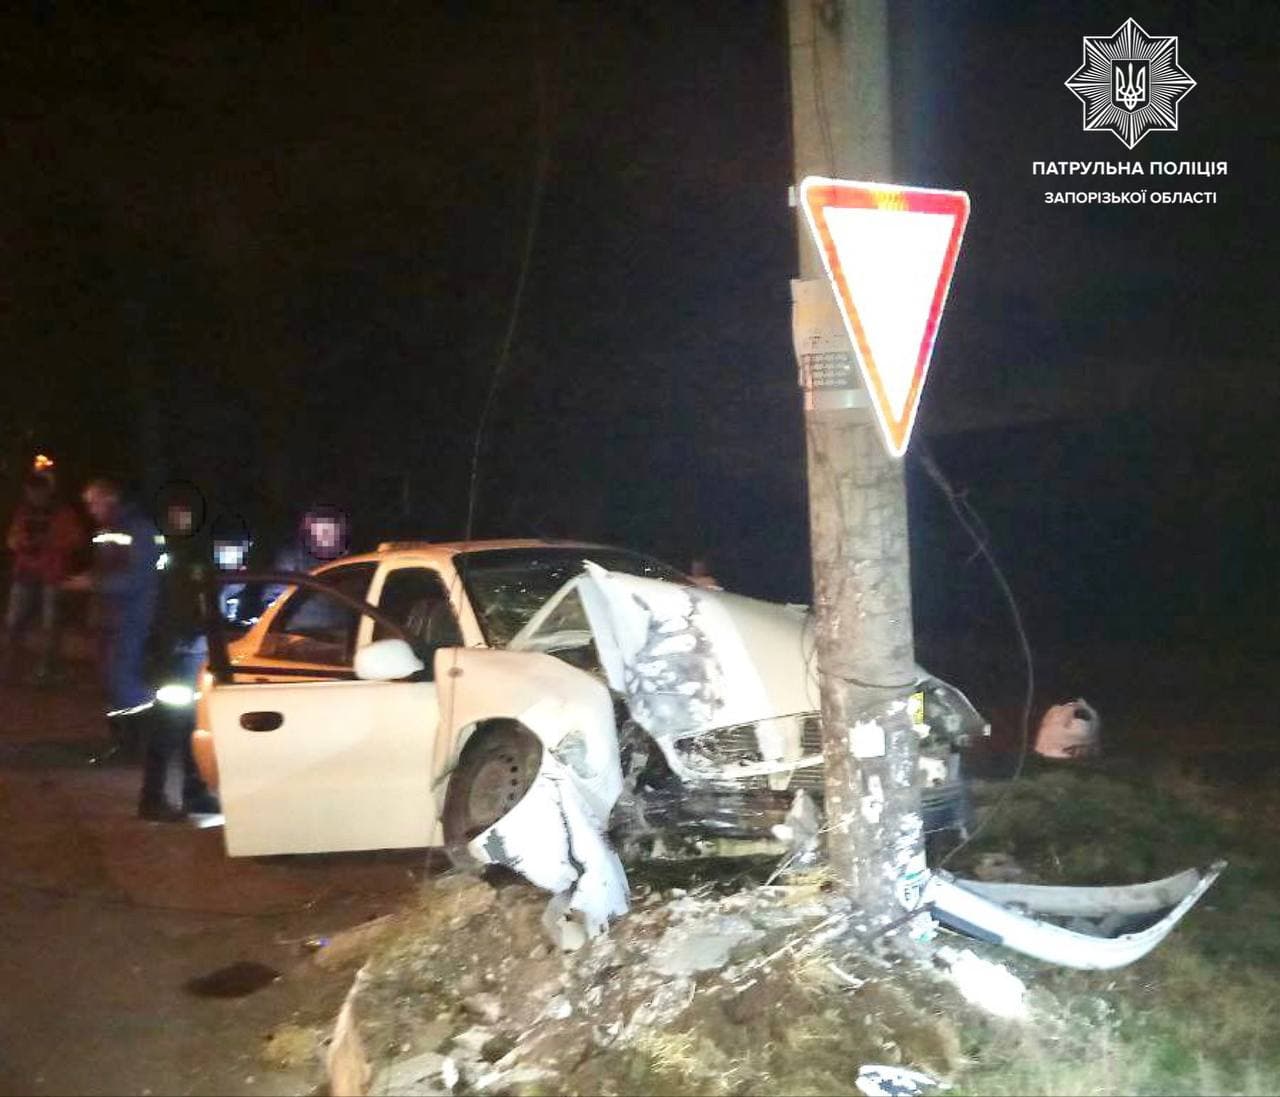 Таксист, который врезался в столб, был пьян: в полиции прокомментировали ДТП в Запорожье (ФОТО)